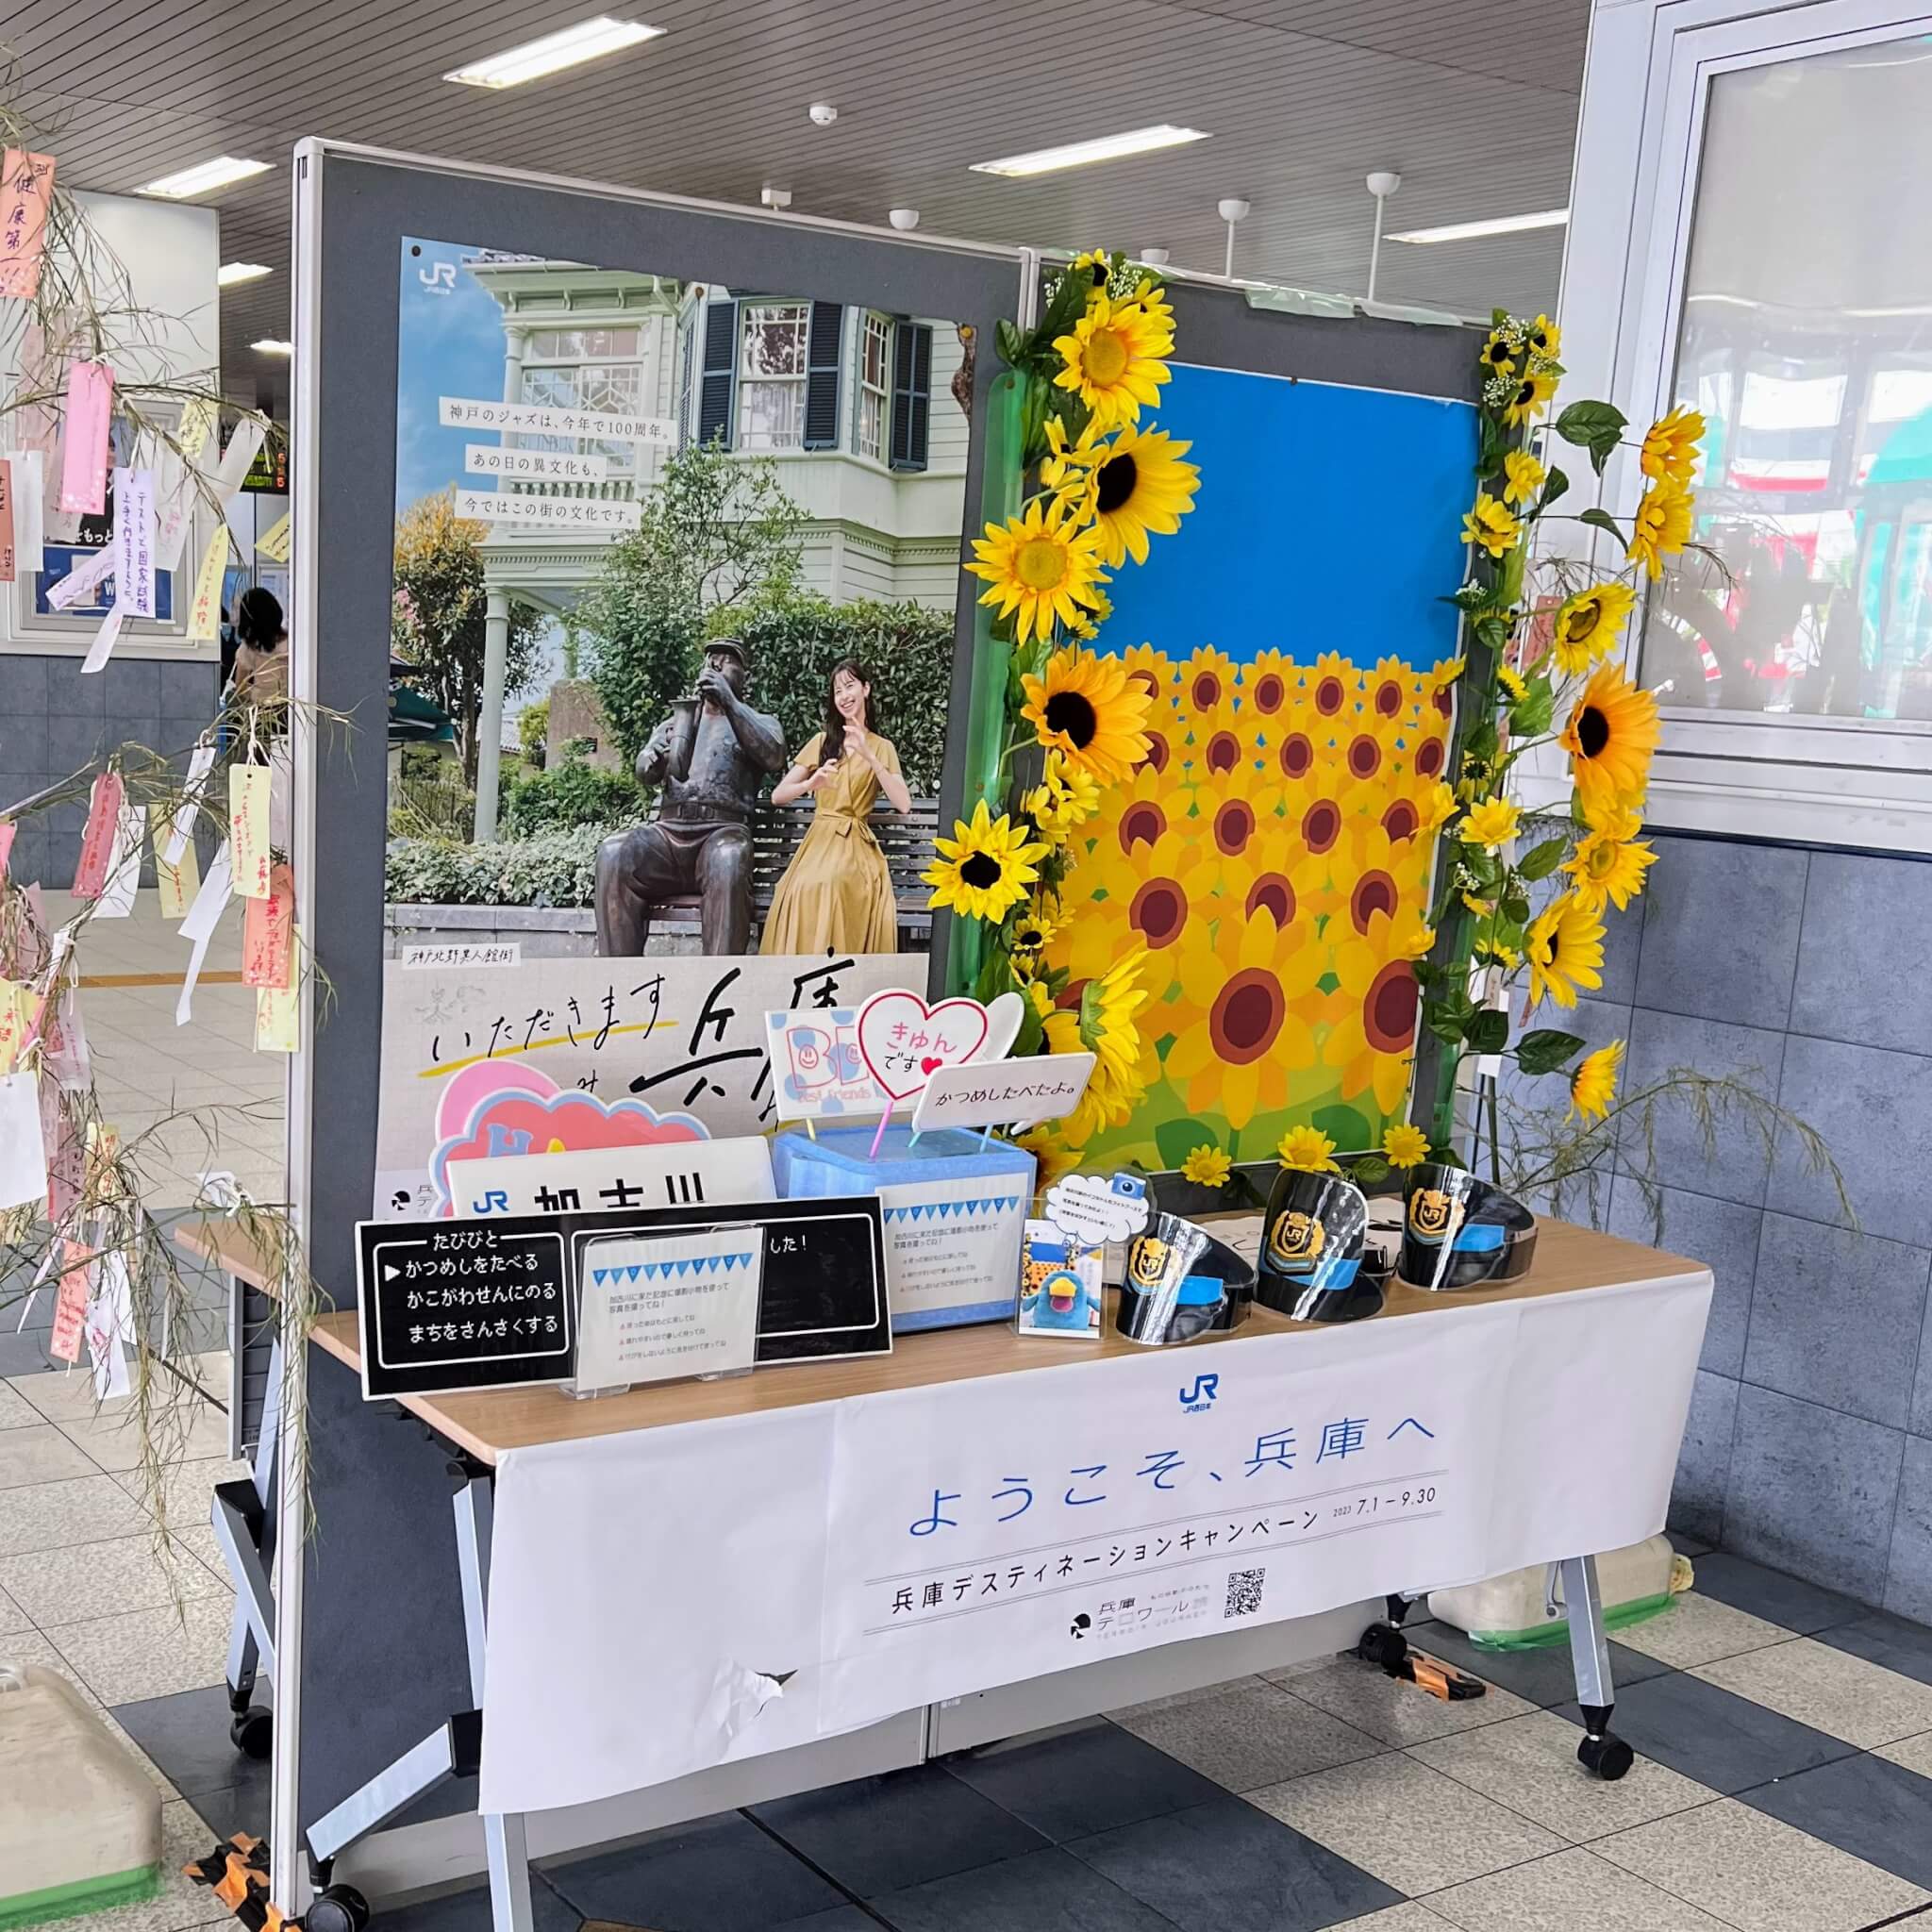 加古川駅の兵庫ディスティネーションキャンペーンのお知らせと写真撮影スポット